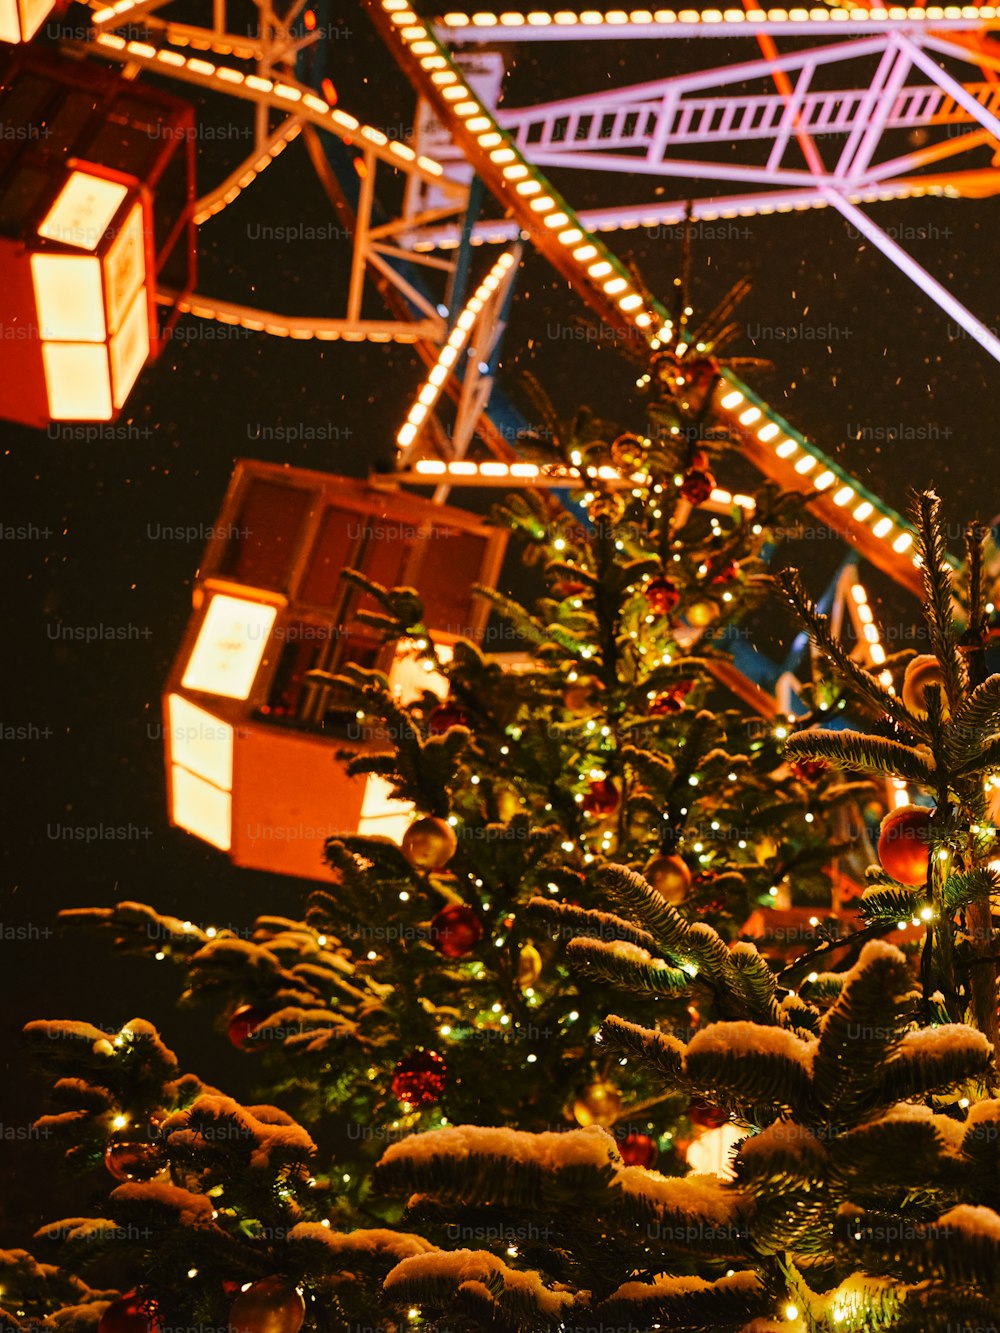 Un albero di Natale con una ruota panoramica sullo sfondo